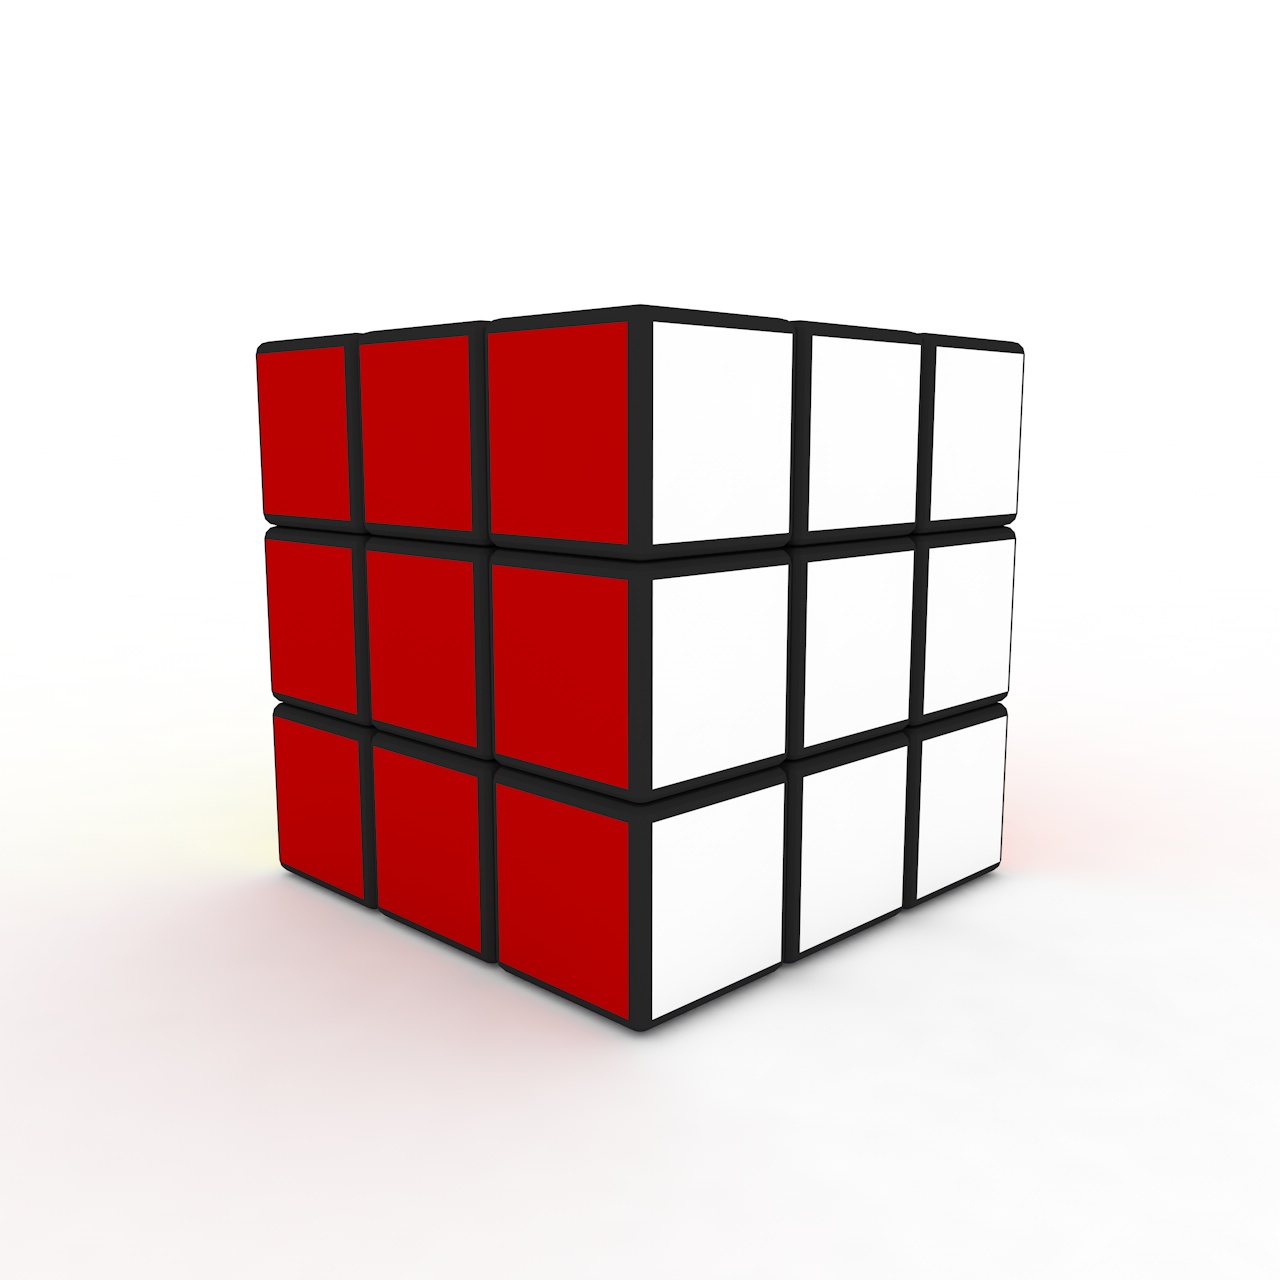 Rubiks Cube 3d model